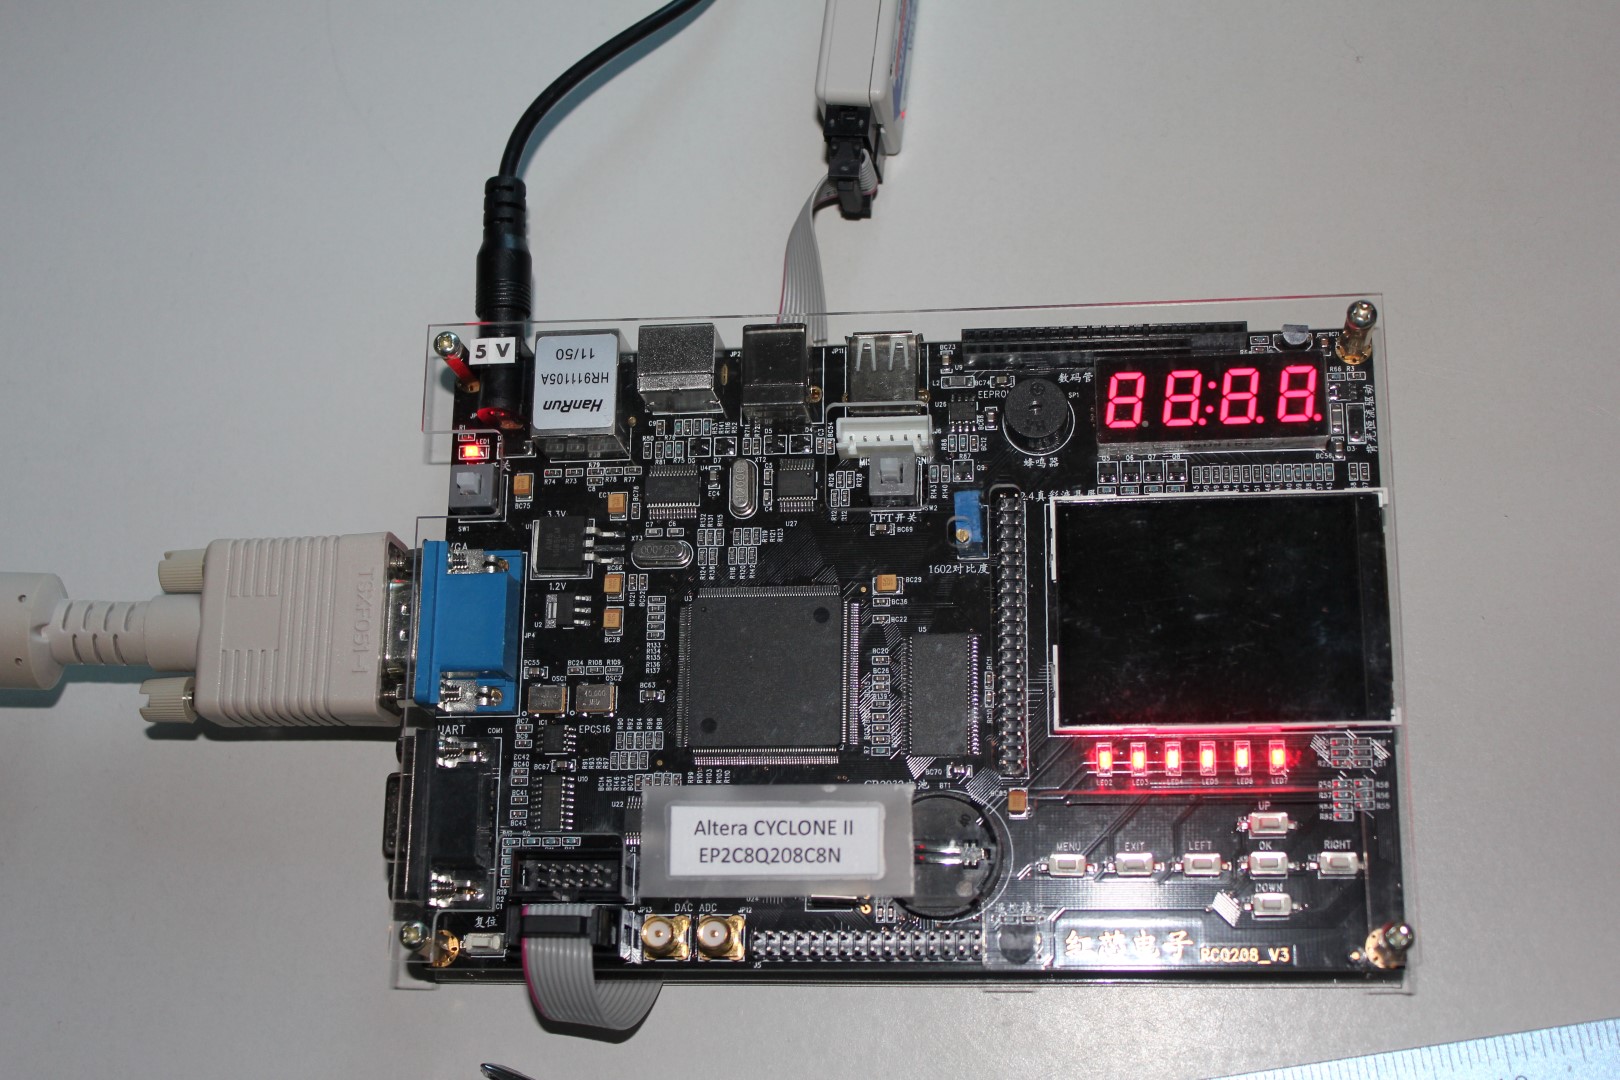 FPGA board with Altera Cyclone II on it